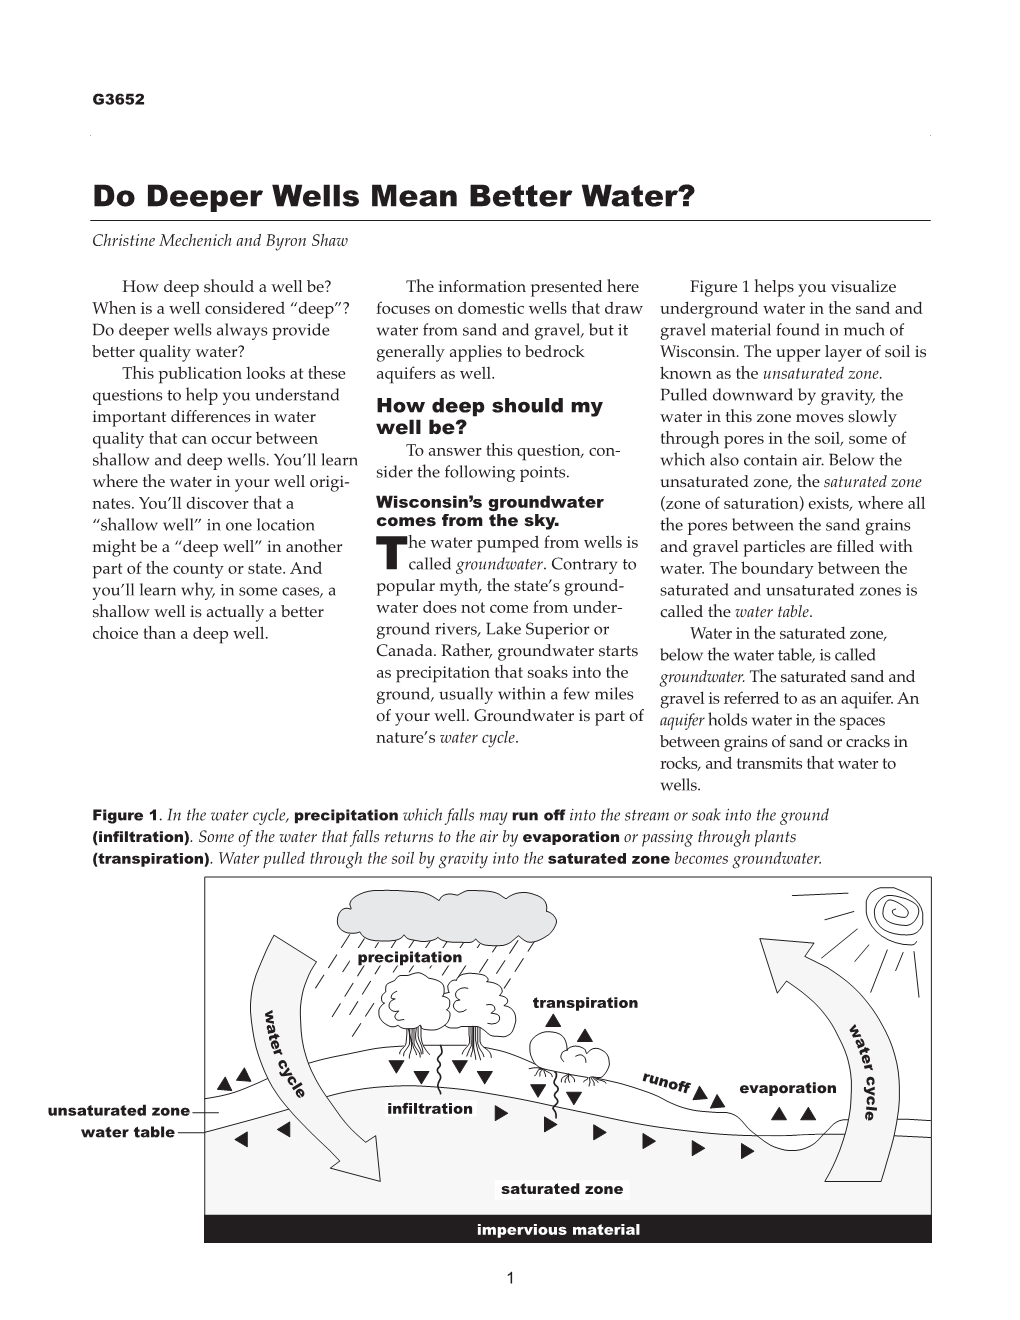 Do Deeper Wells Mean Better Water?